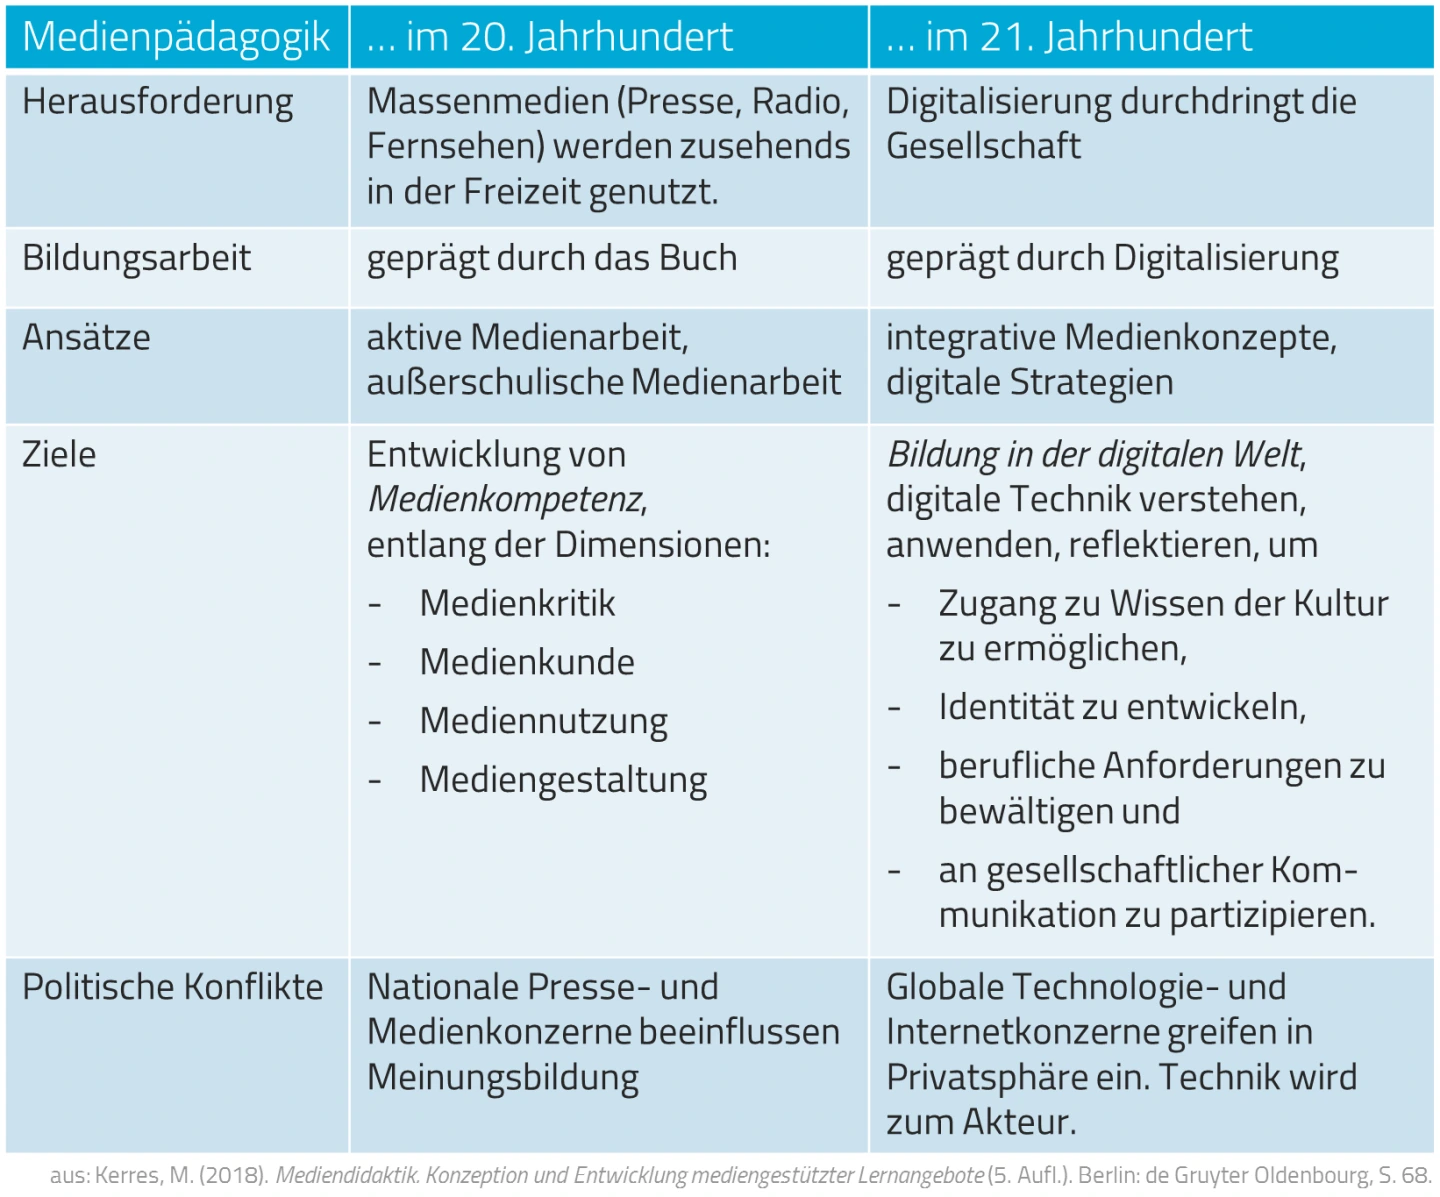 Tabelle aus Kerres (2018): Medienpädagogik im 20. und 21. Jahrhundert